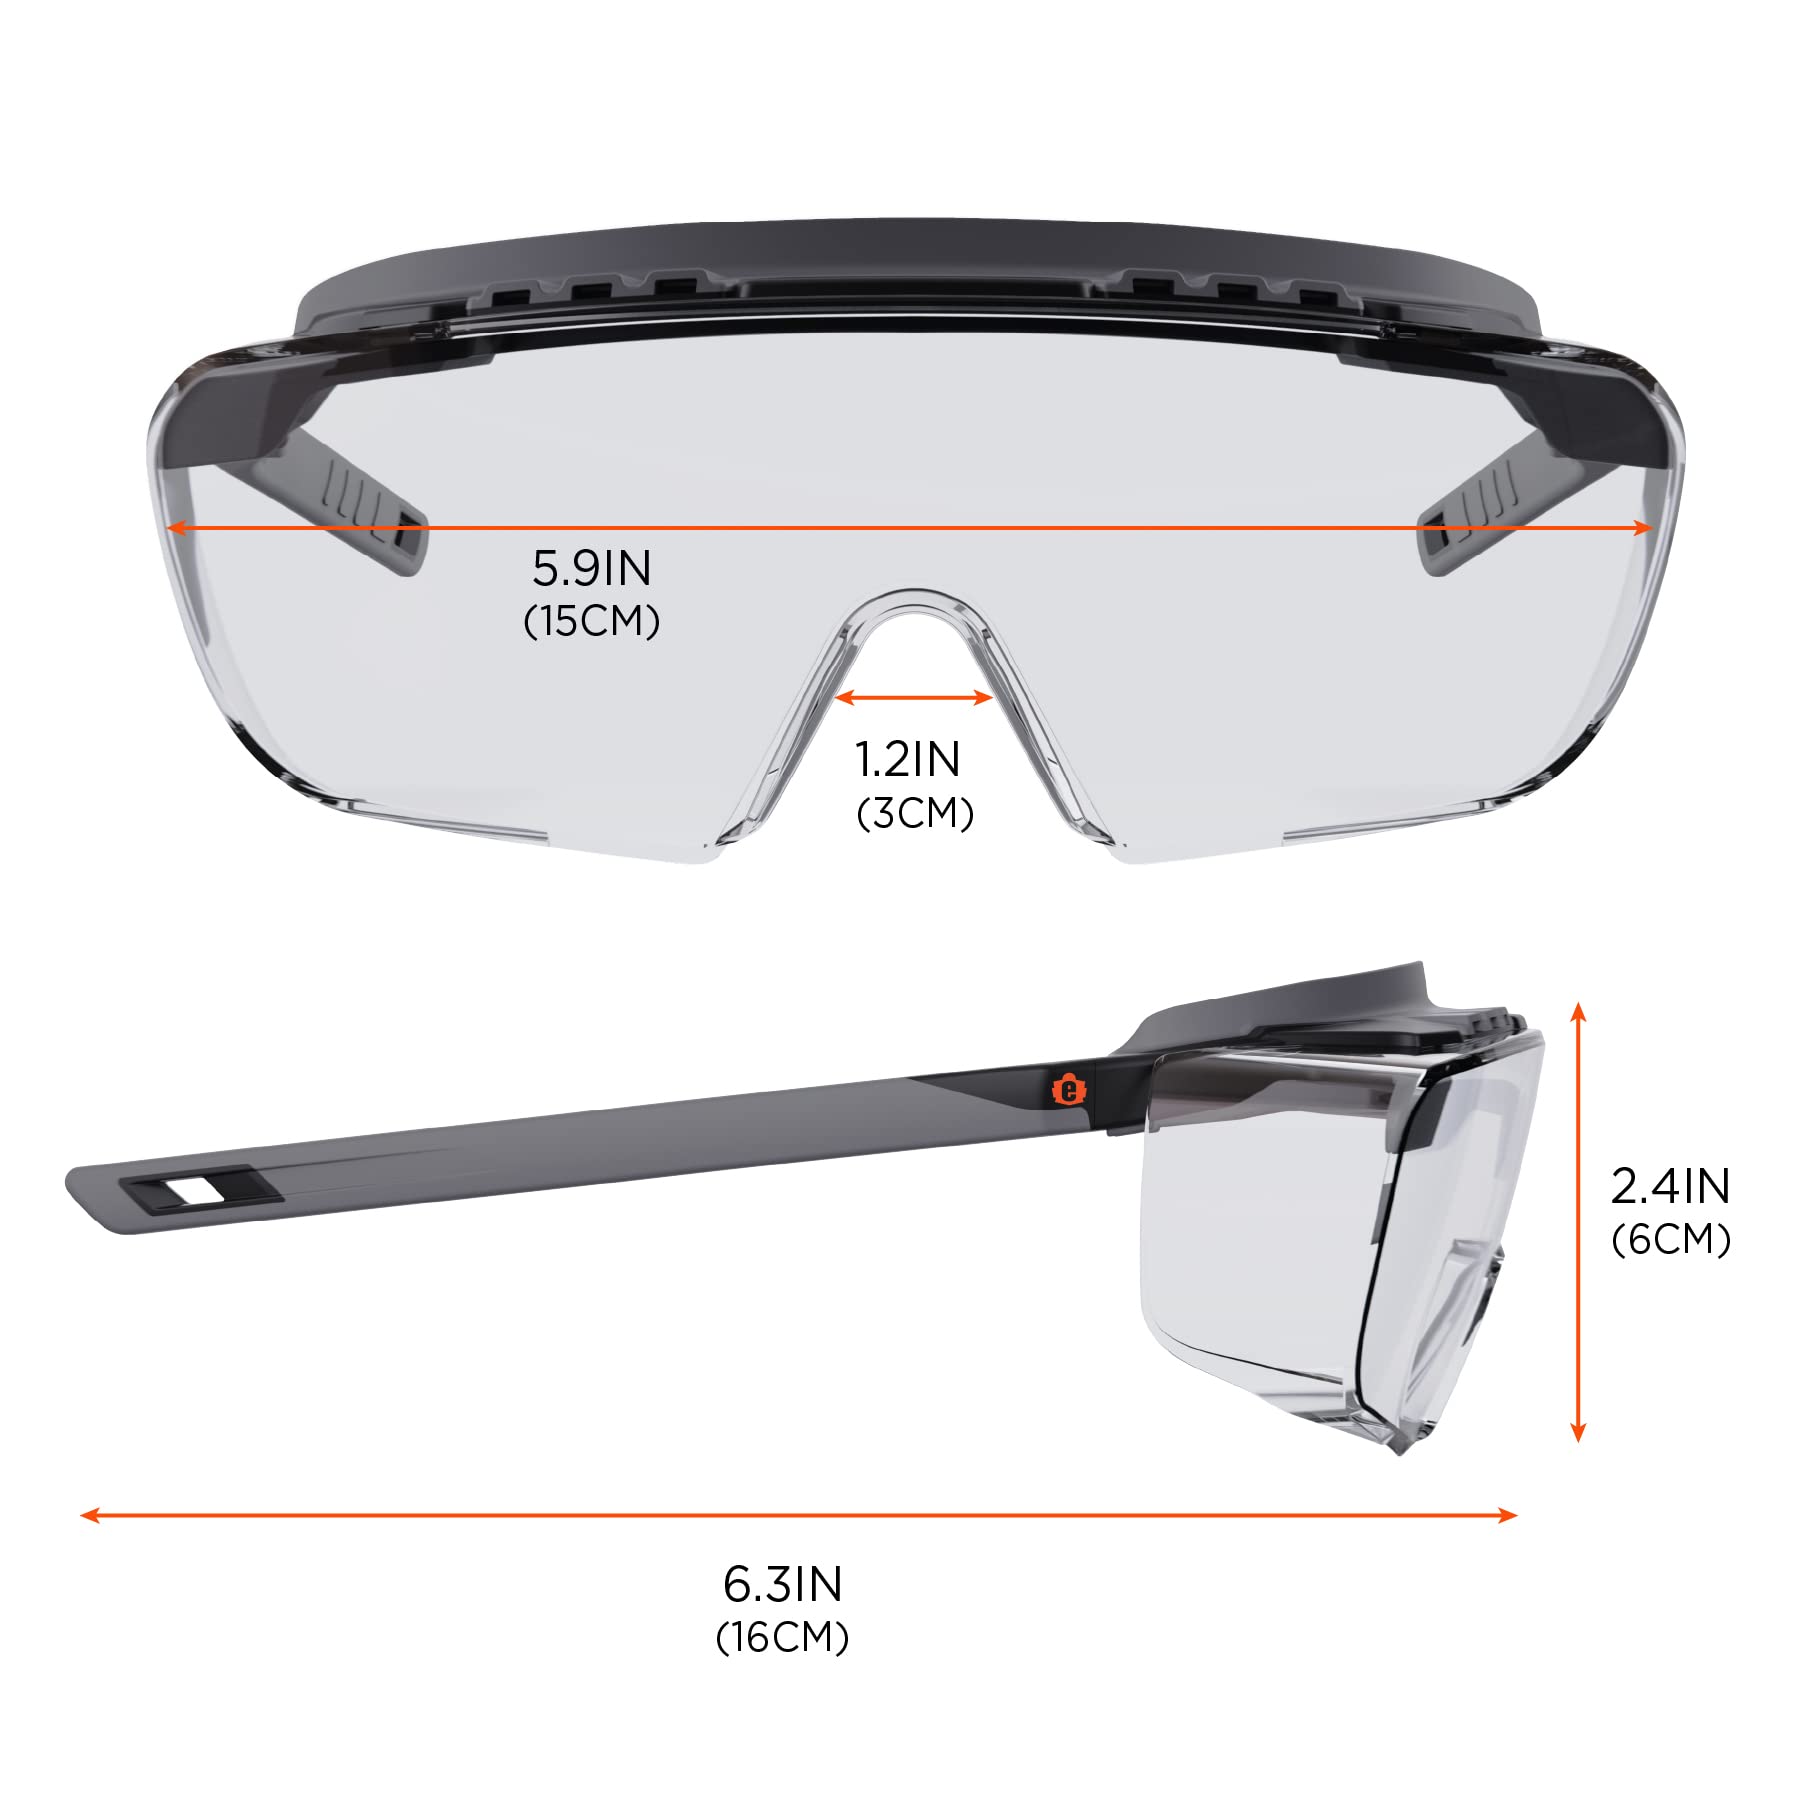 Ergodyne Skullerz OSMIN OTG Safety Glasses, Anti Fog, Over the Glasses Anti Scratch Protective Eyewear